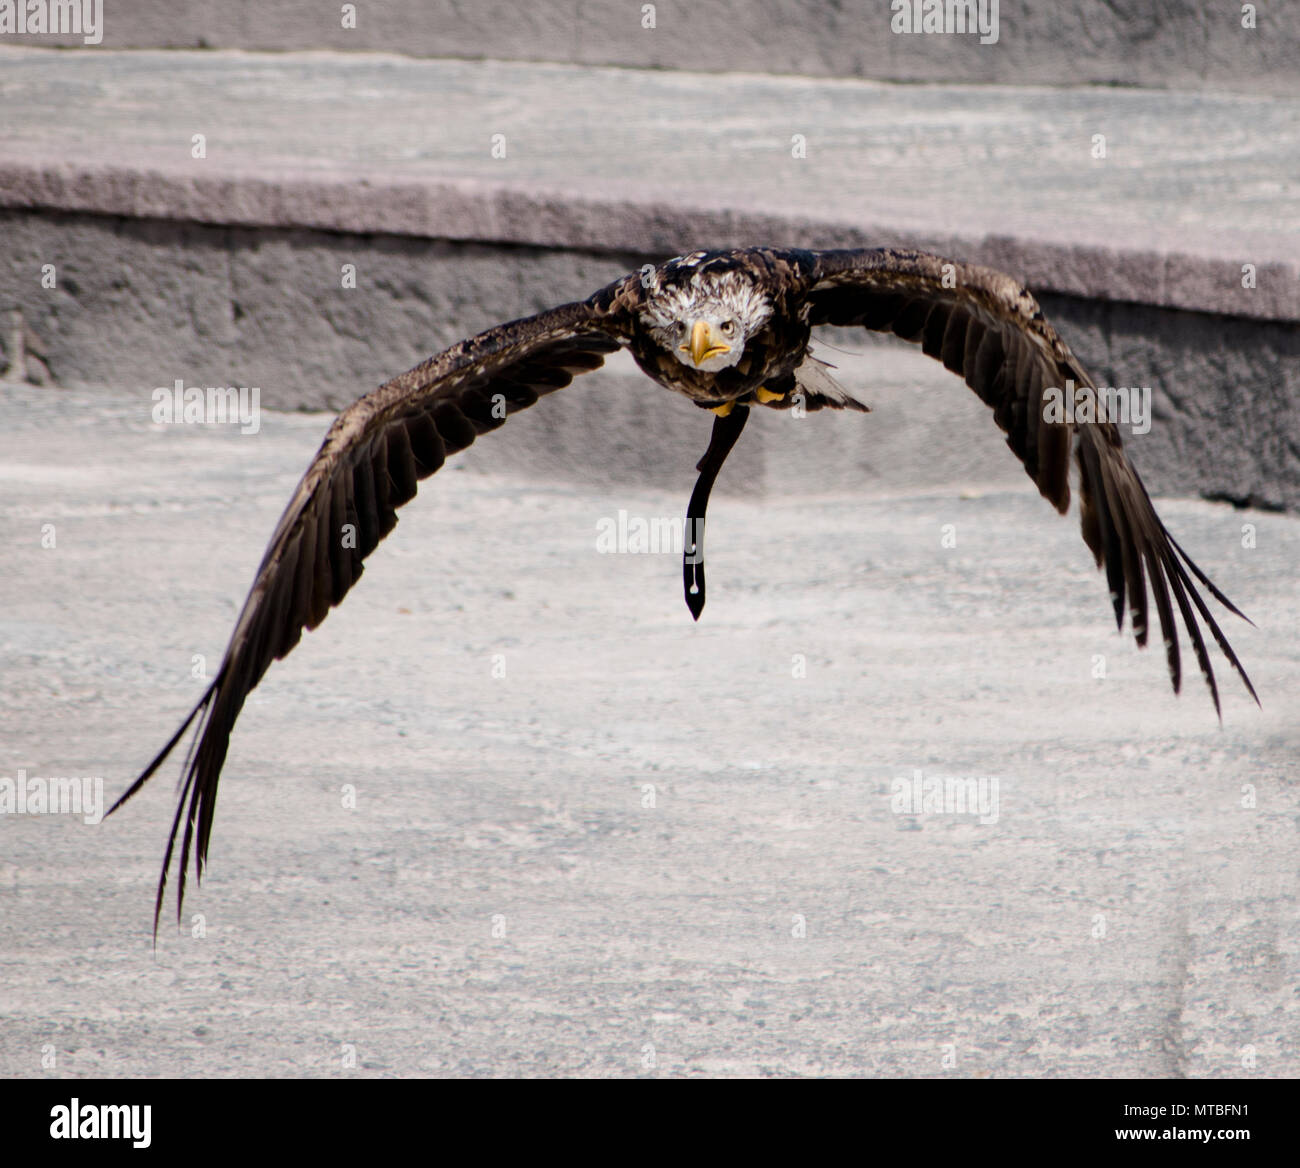 Aguila en pleno vuelo al acecho de su presa Banque D'Images